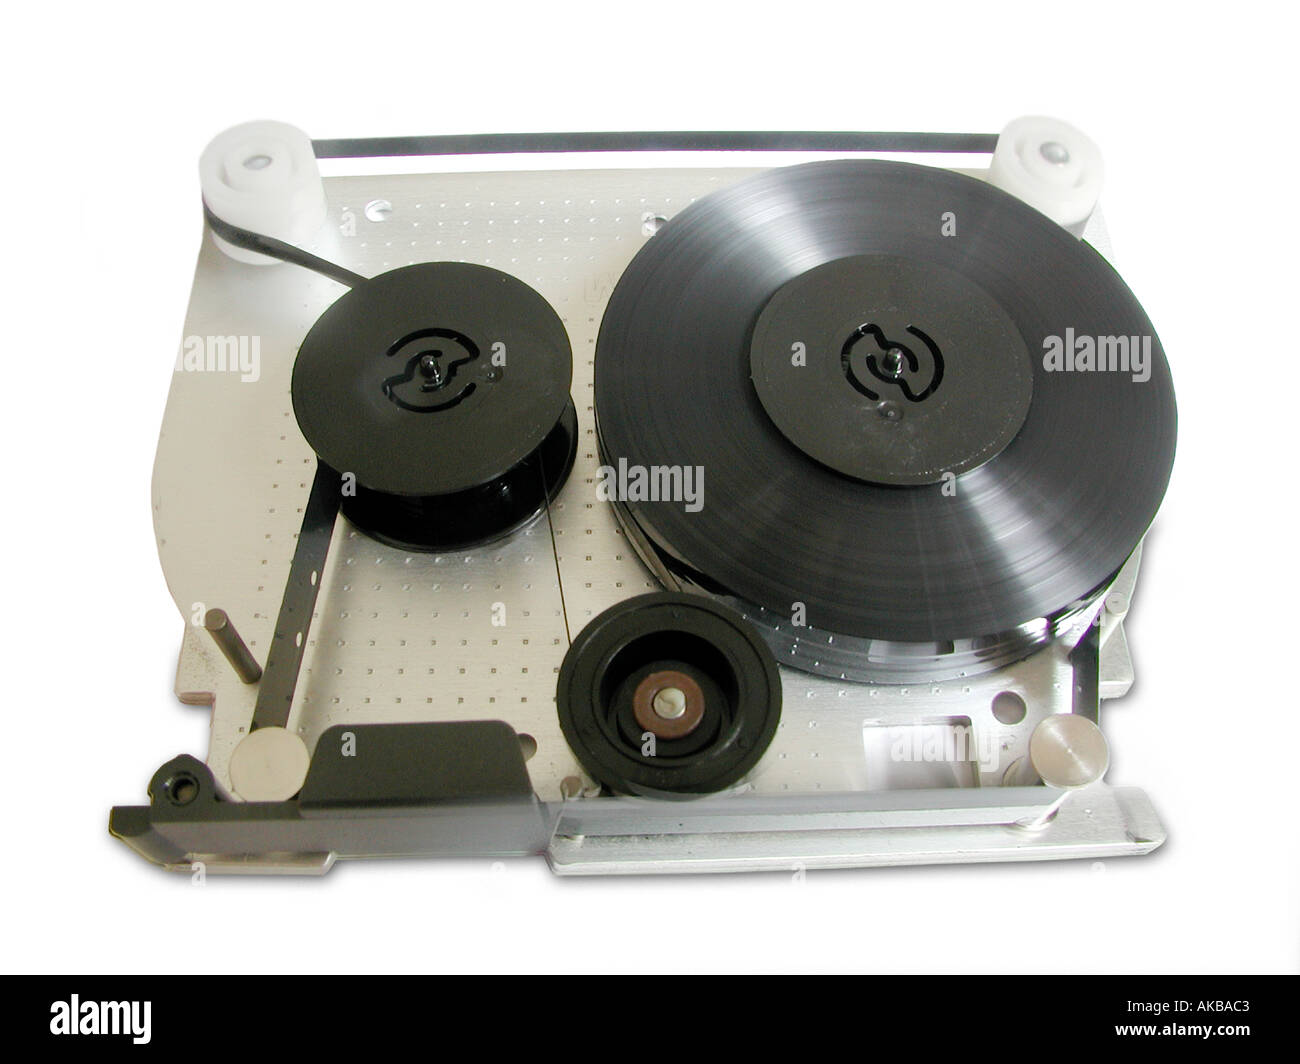 Cartucho de cinta de copia de seguridad del equipo Fotografía de stock -  Alamy